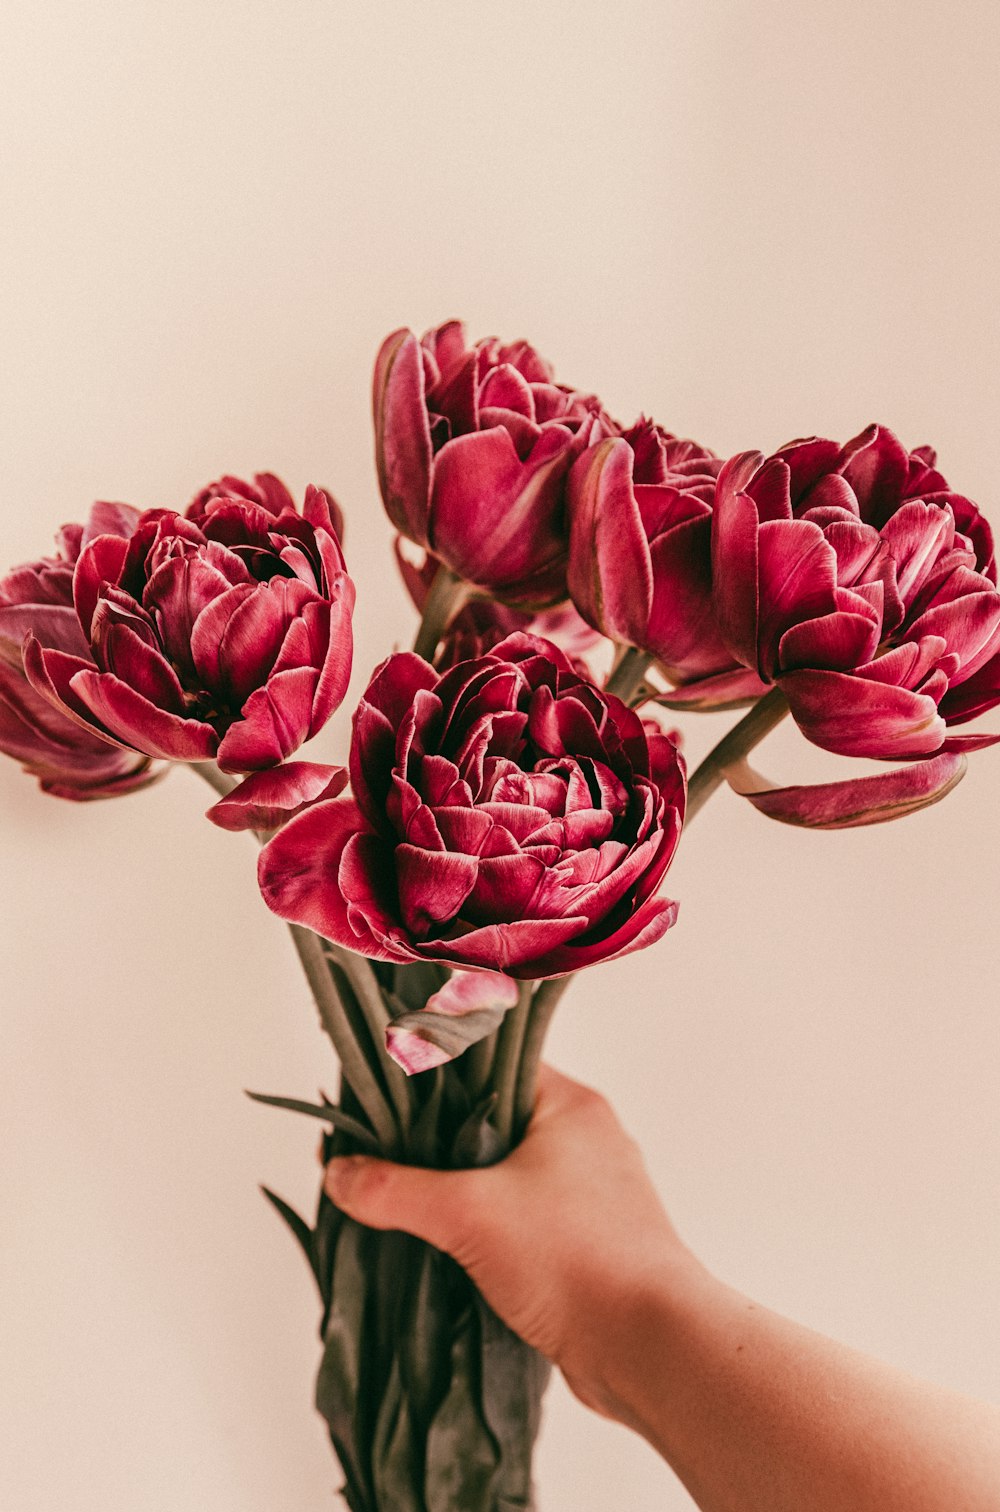 Persona che tiene i tulipani rossi nella fotografia ravvicinata